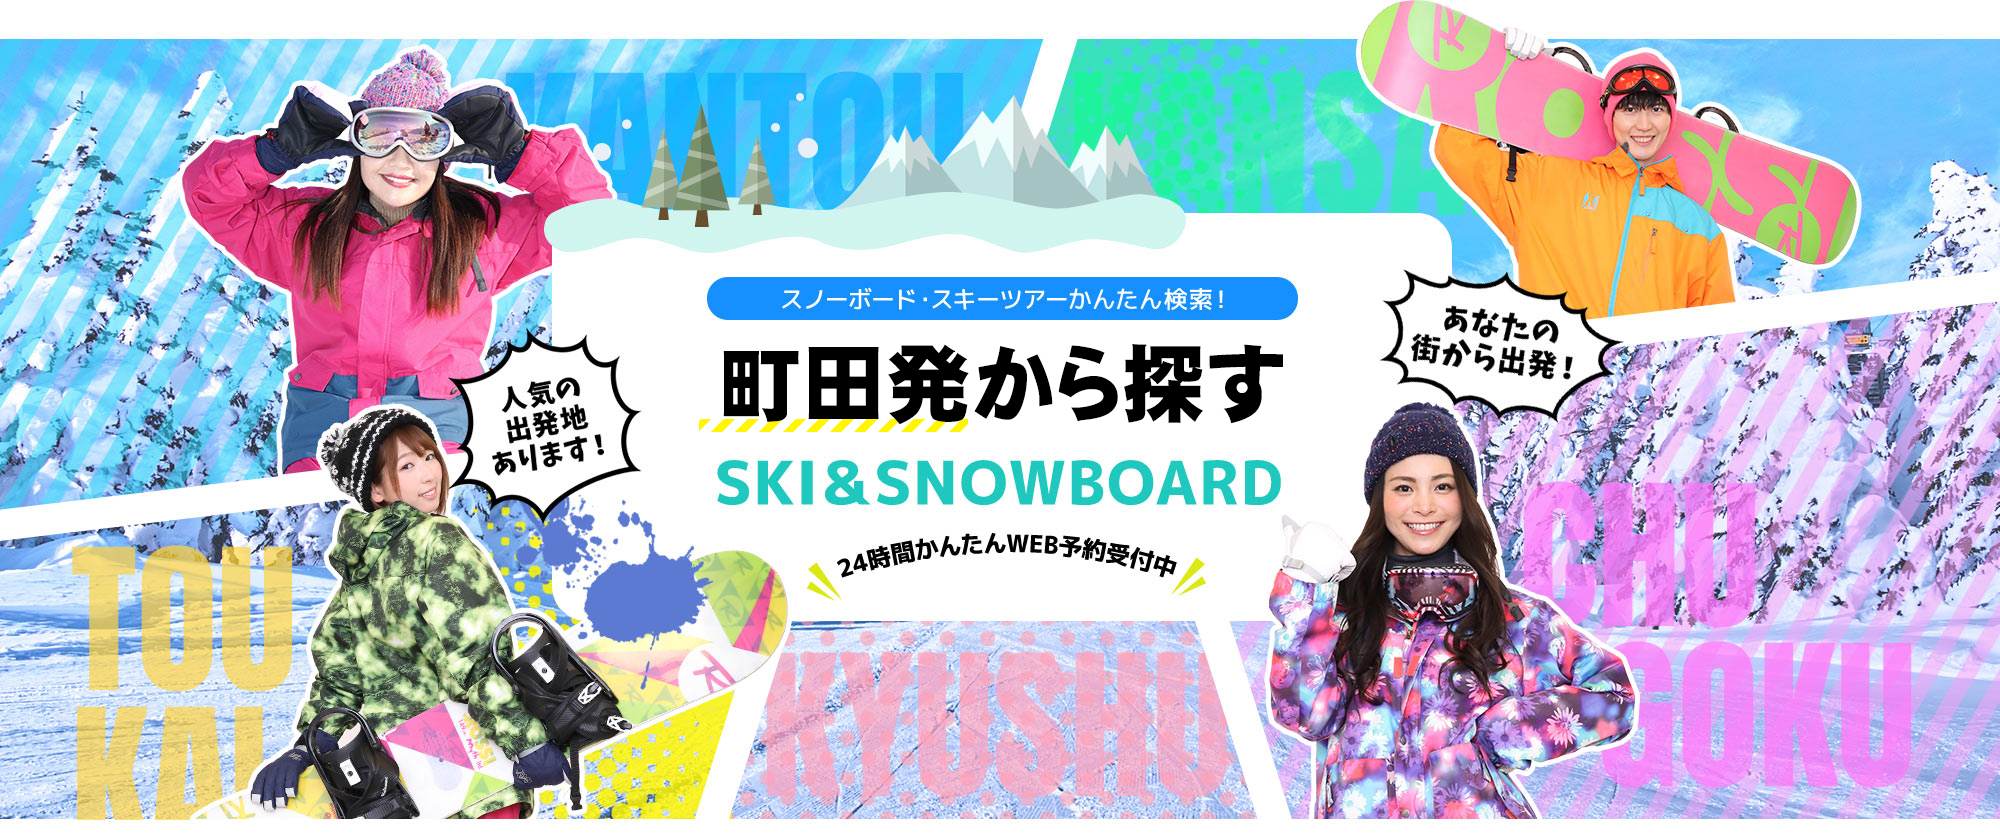 スノーボード・スキーツアーかんたん検索！ 町田発から探す SKI&SNOWBOARD